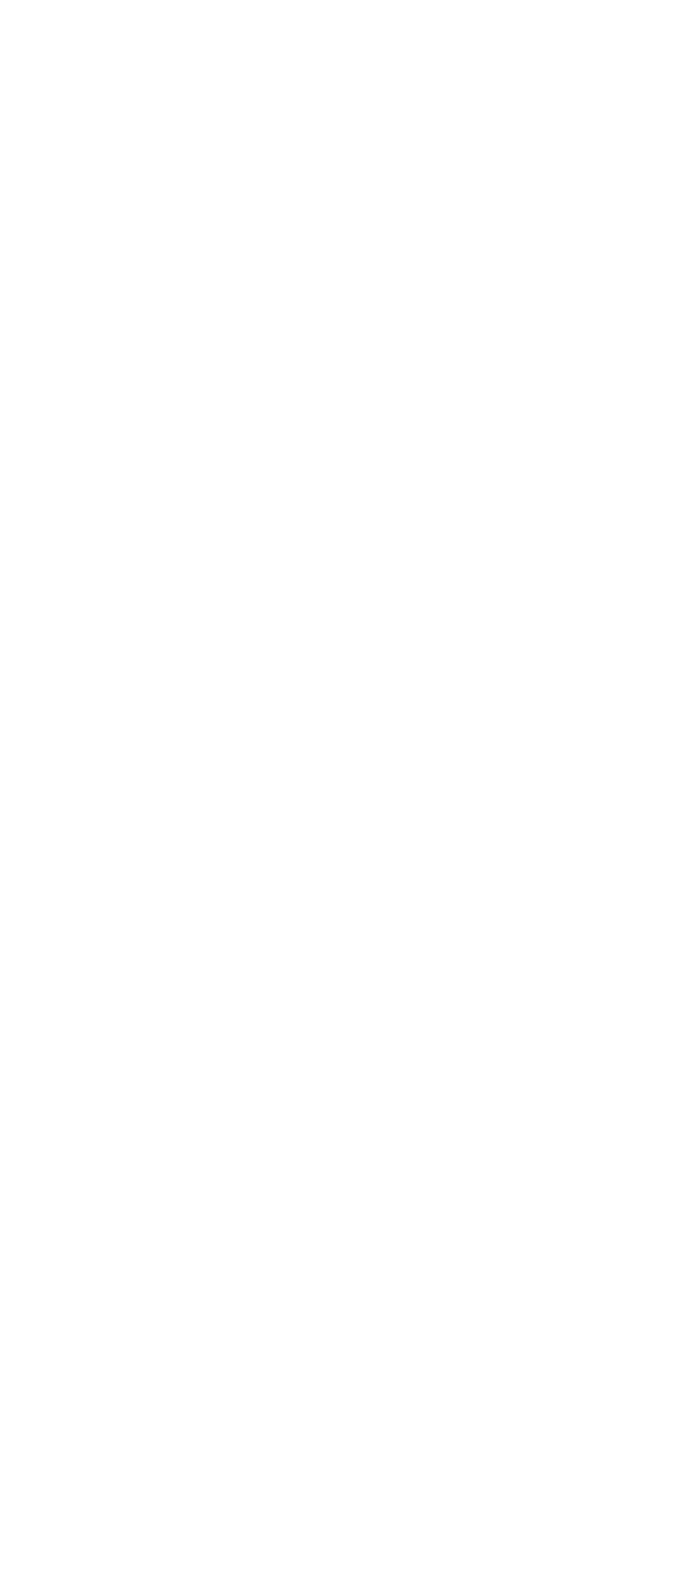 BAWAG Group logo for dark backgrounds (transparent PNG)